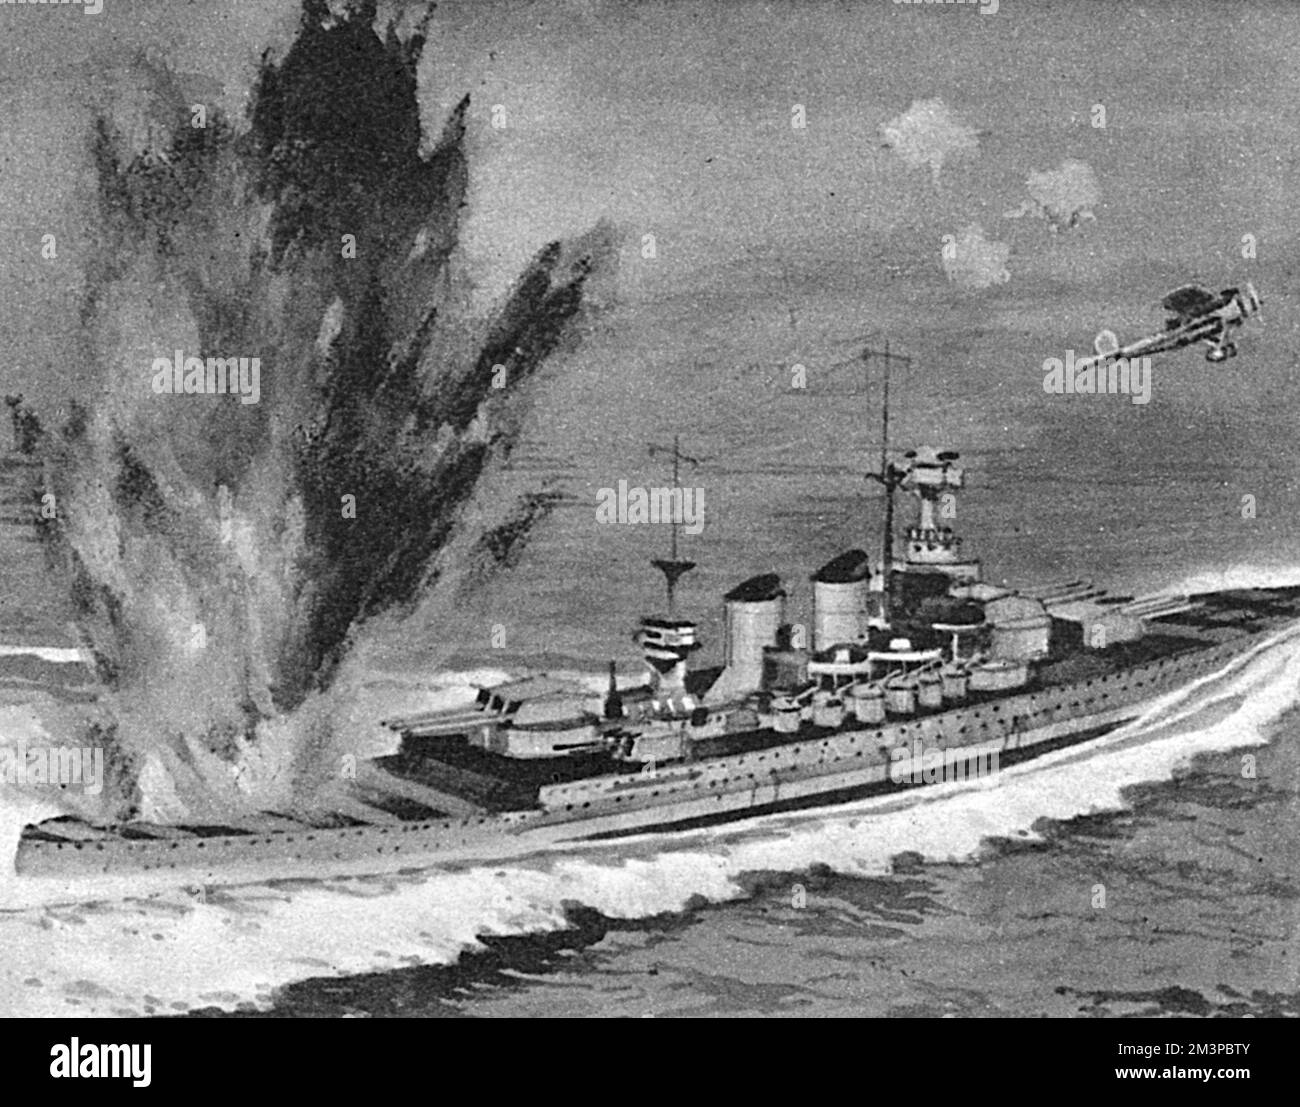 Um 11,30am Uhr wird das italienische Schlachtschiff Vittorio Veneto von britischen Fairey Albacore Torpedobombern angegriffen, die vom Flugzeugträger H.M.S. gestartet wurden Beeindruckend Datum: 28. März 1941 Stockfoto